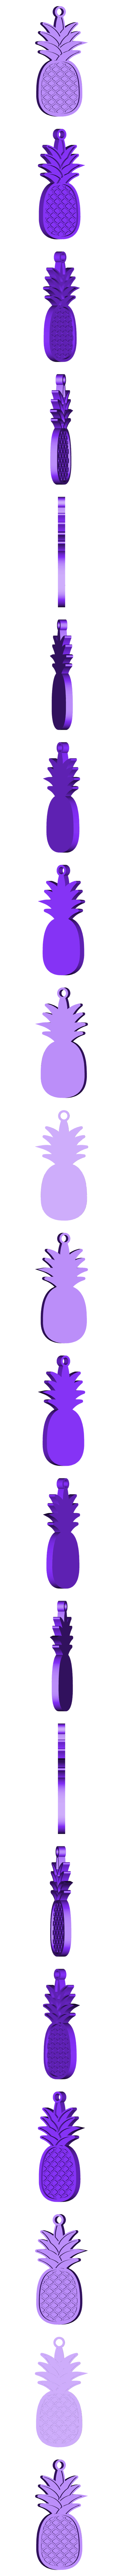 pineapple.stl Télécharger fichier STL gratuit Porte-clés ananas • Modèle pour imprimante 3D, Giara